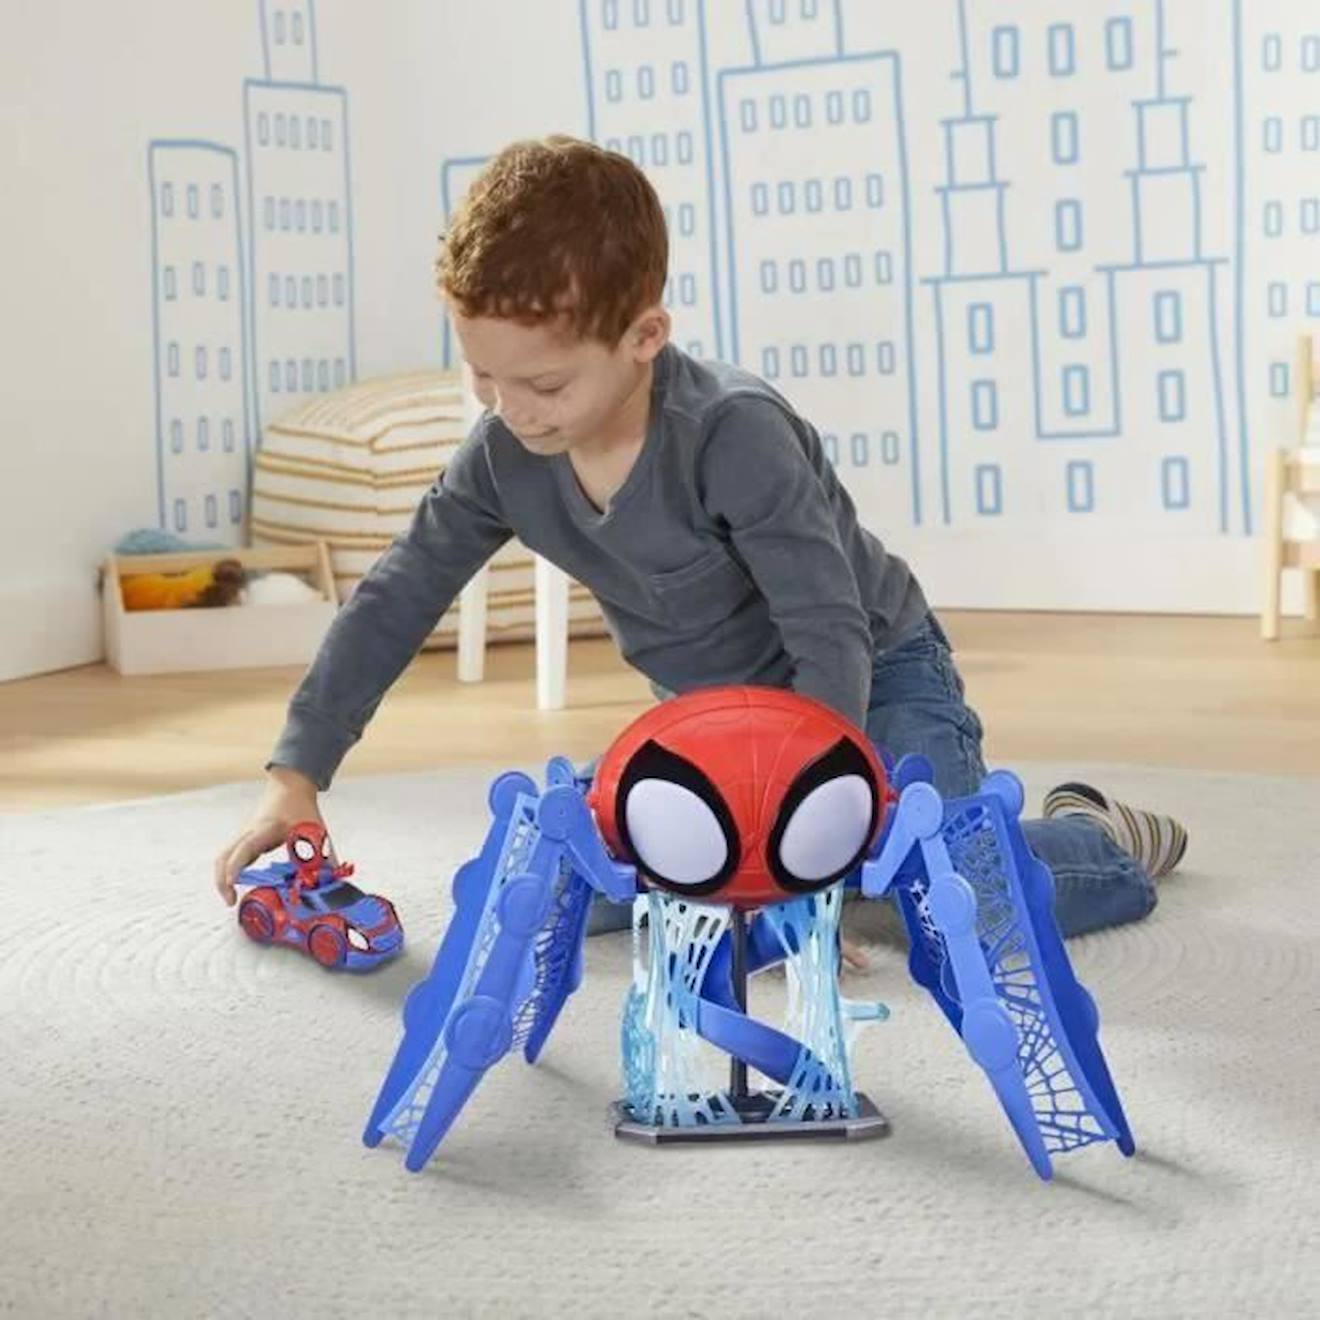 Spidey et ses Amis Extraordinaires, quartier général Arachno-mobile 2 en 1,  jouet préscolaire, dès 3 ans, 60 cm de haut au meilleur prix